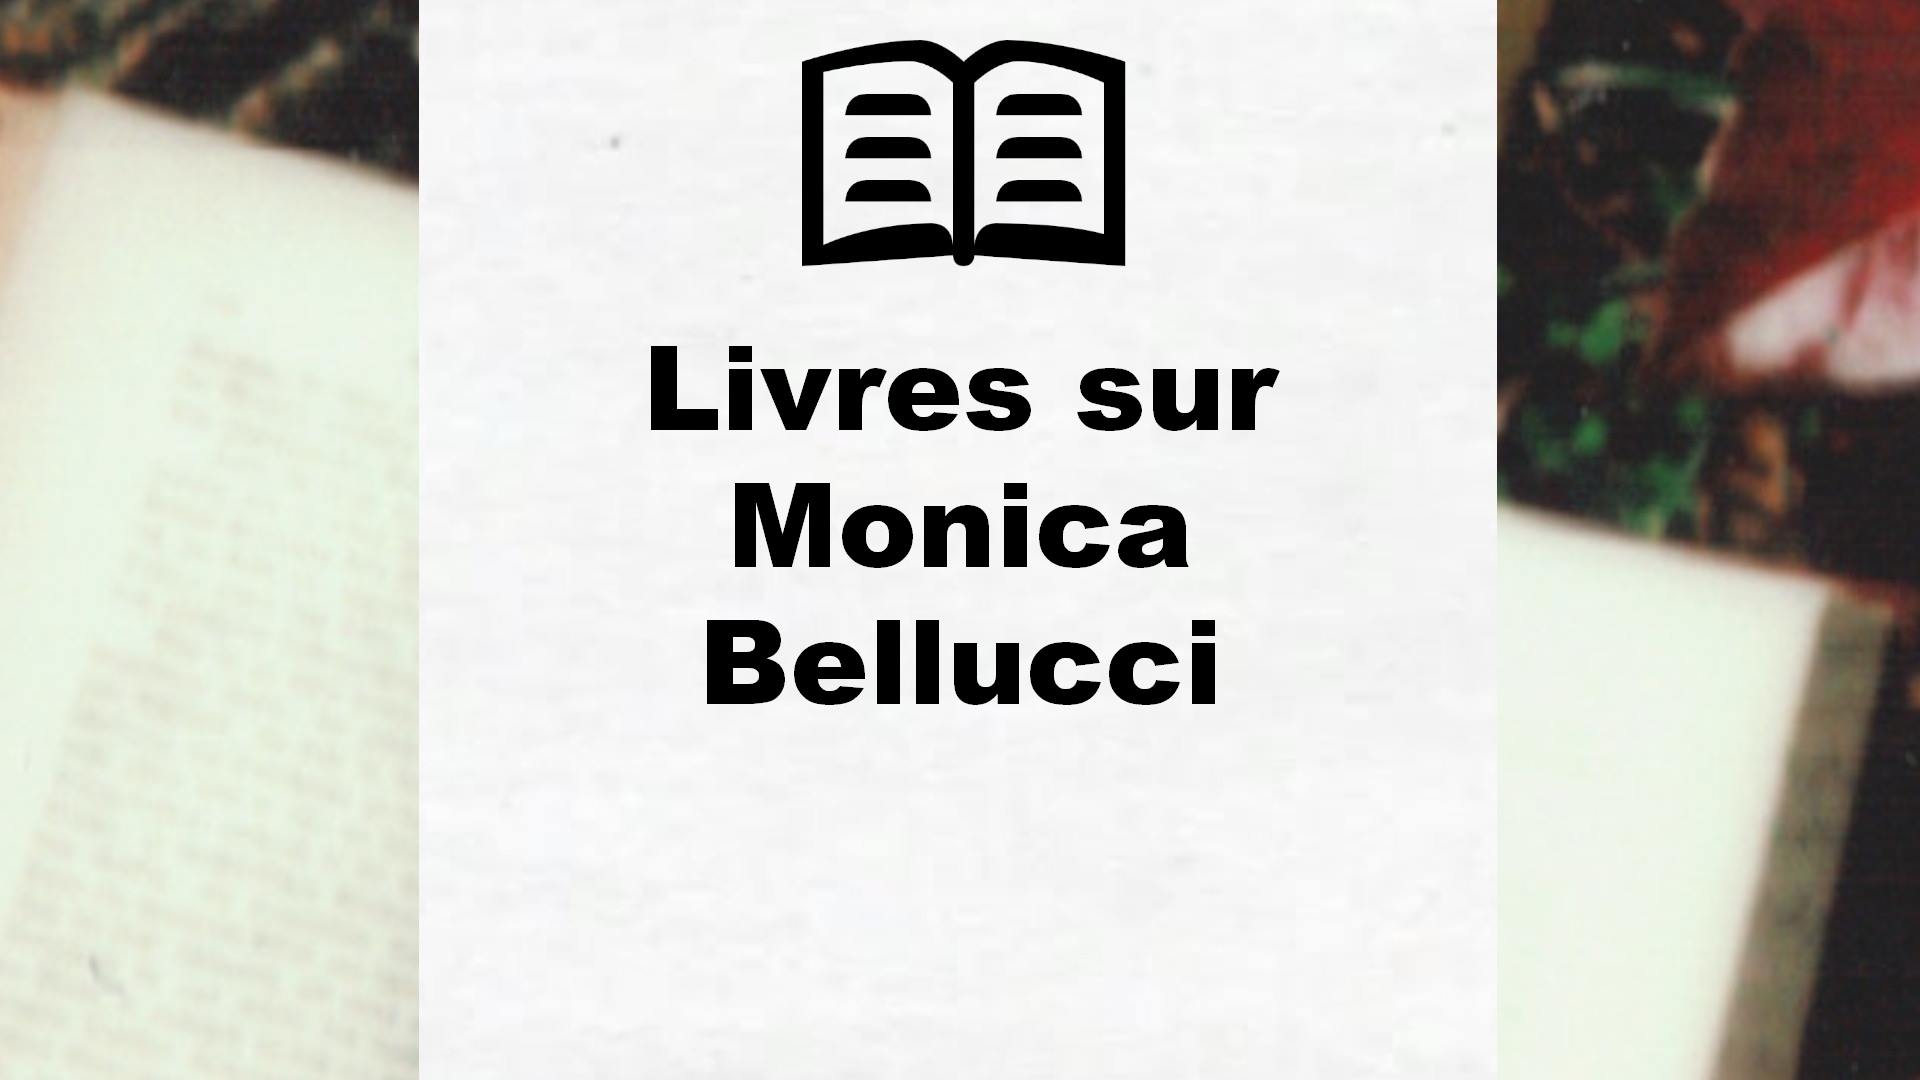 Livres sur Monica Bellucci